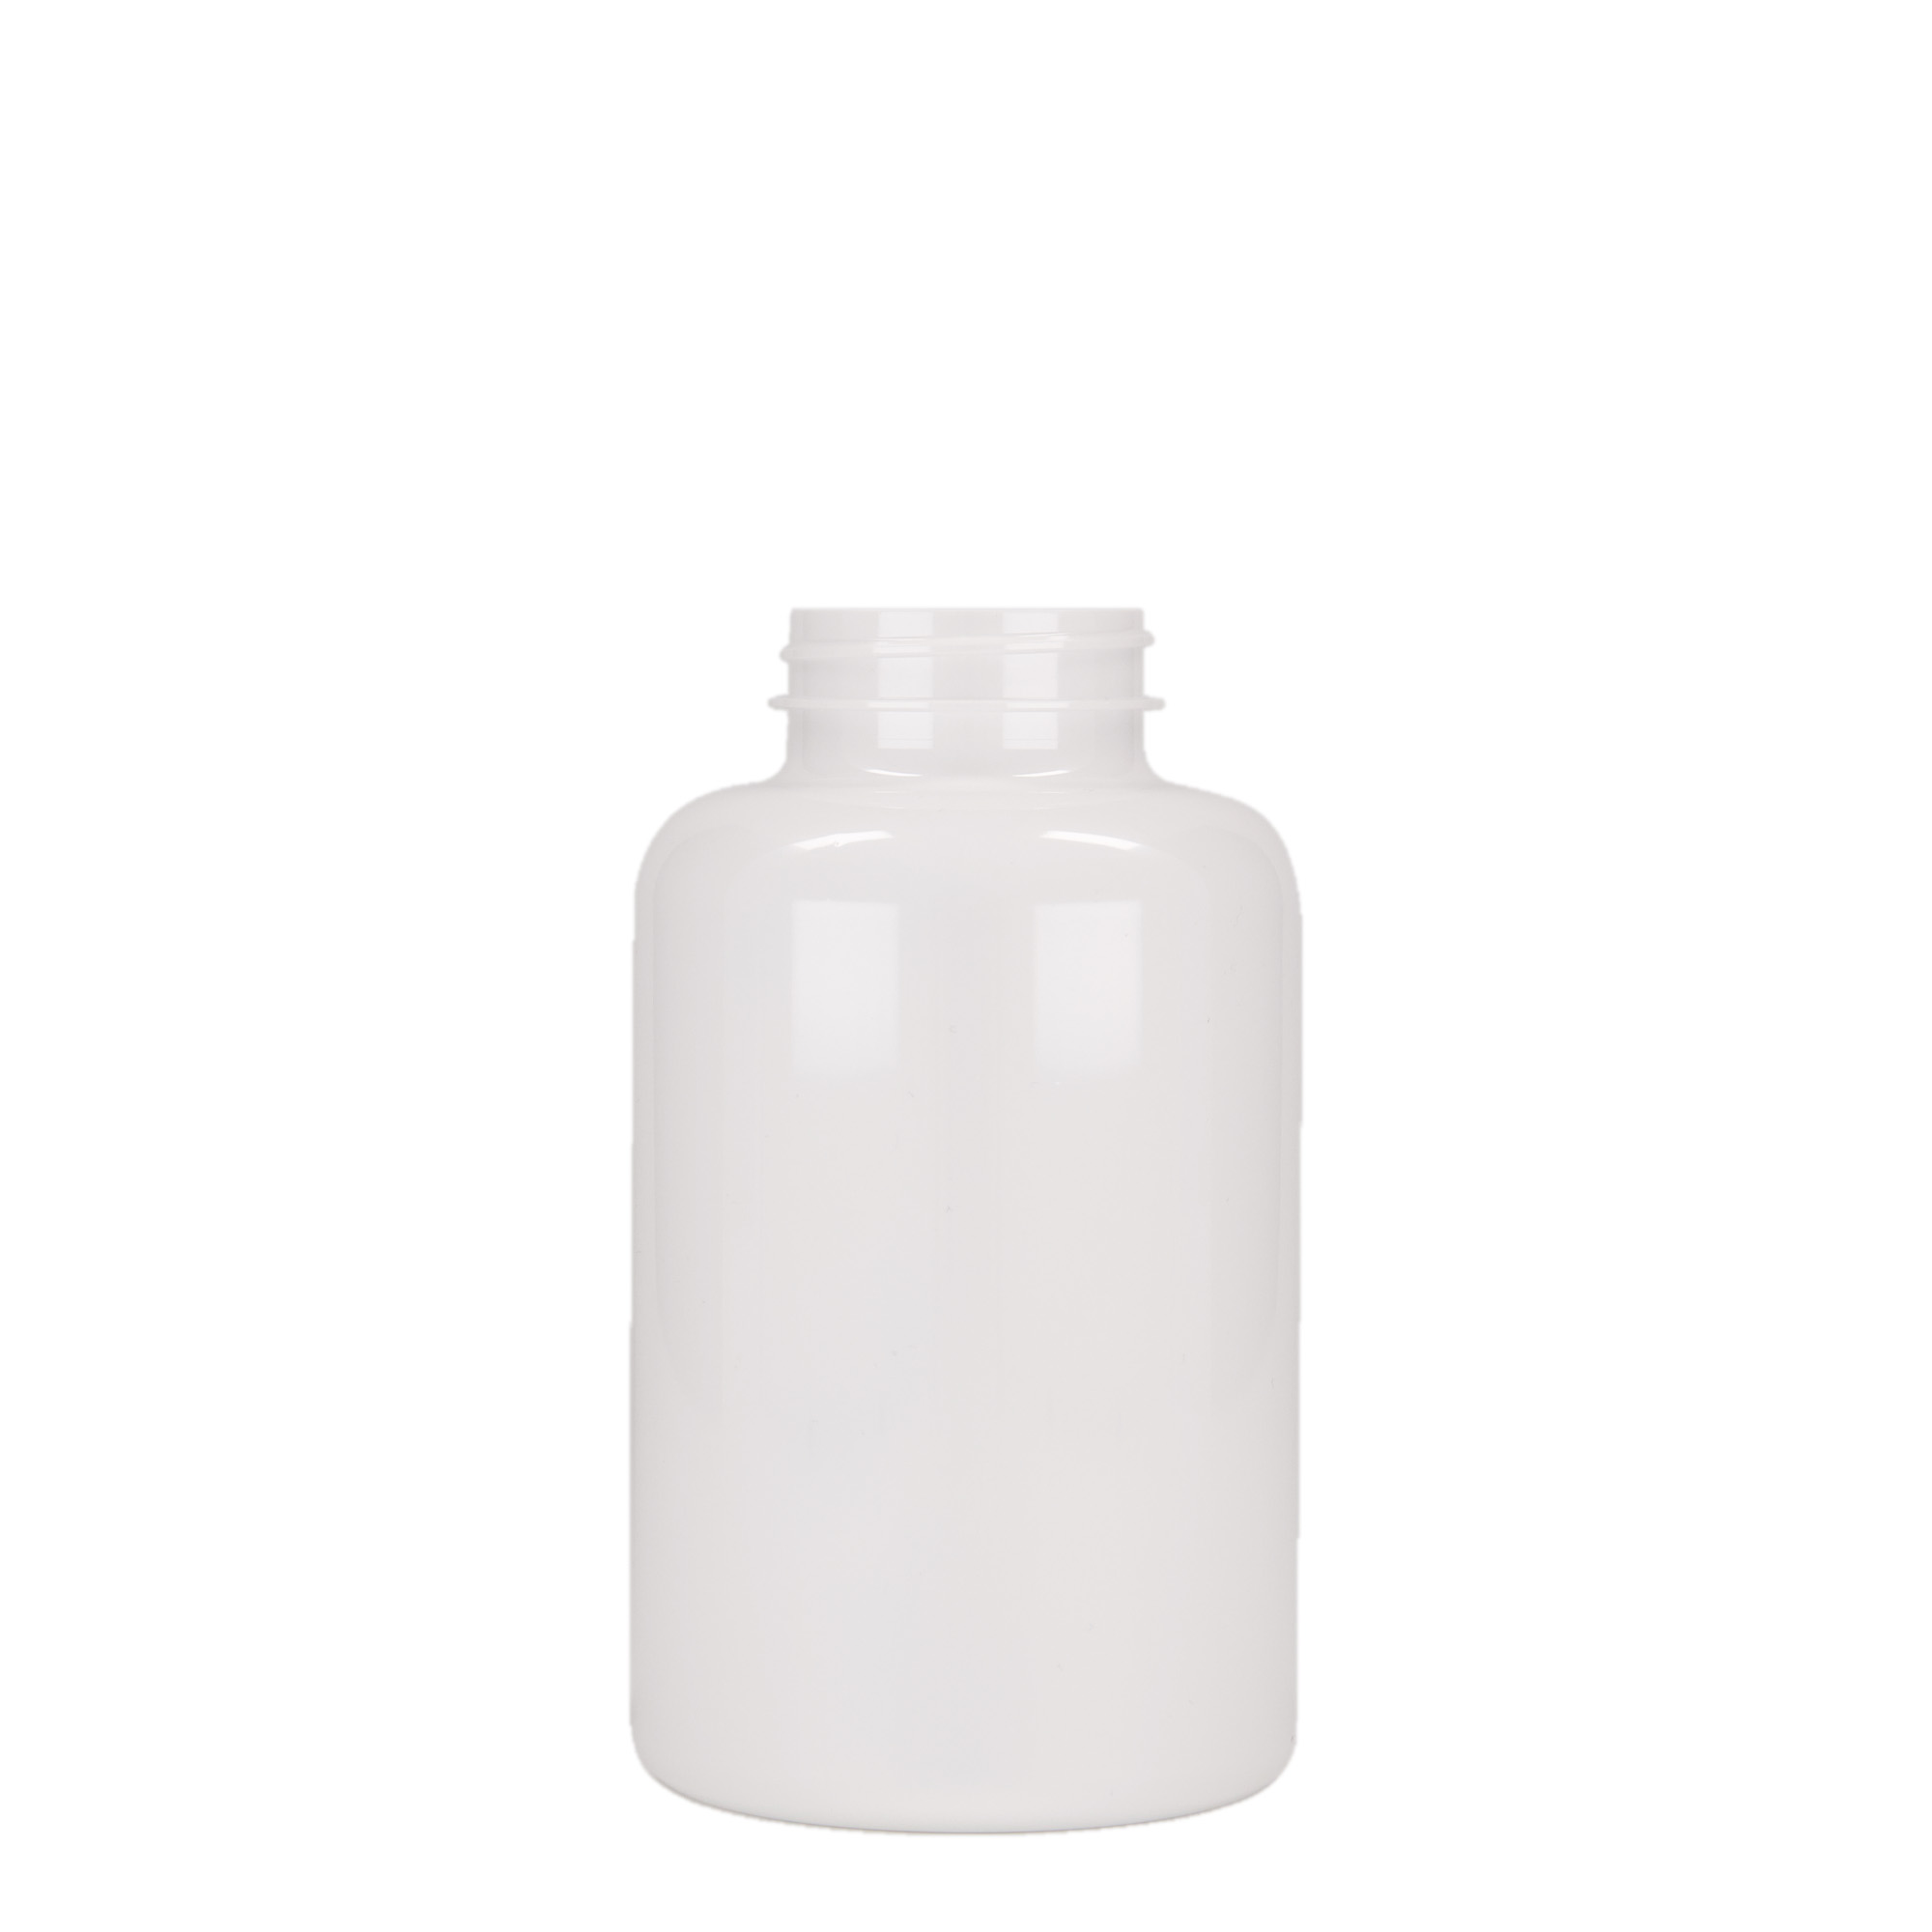 500 ml PET packer, plastic, white, closure: GPI 45/400